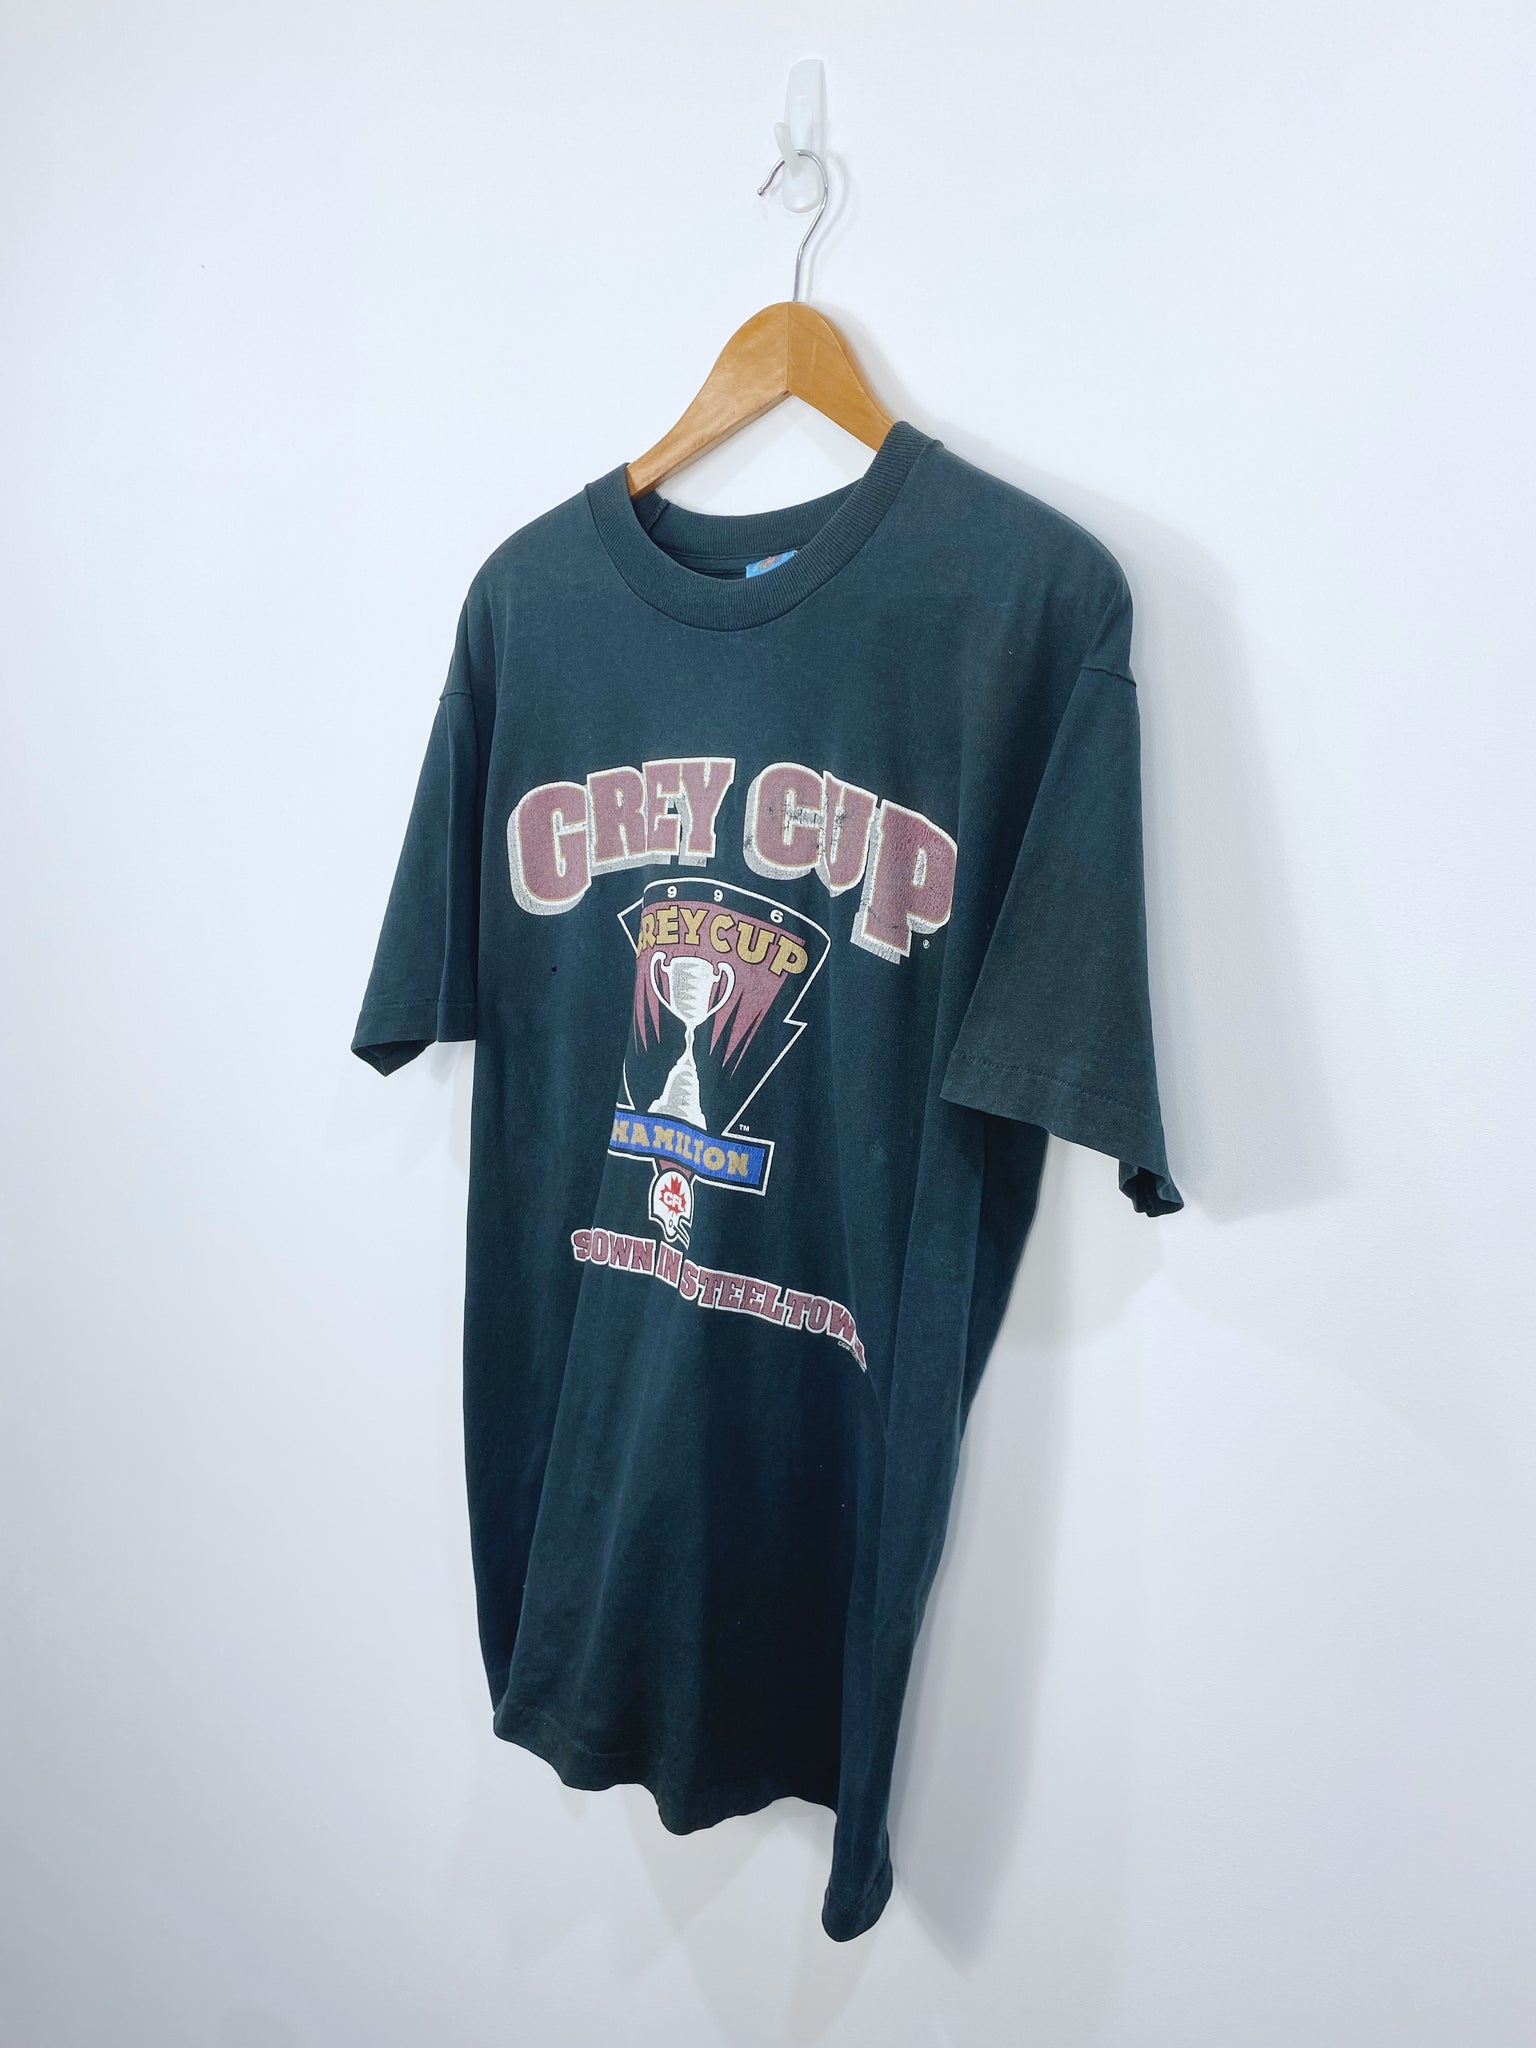 Vintage 1996 Grey Cup T-shirt L